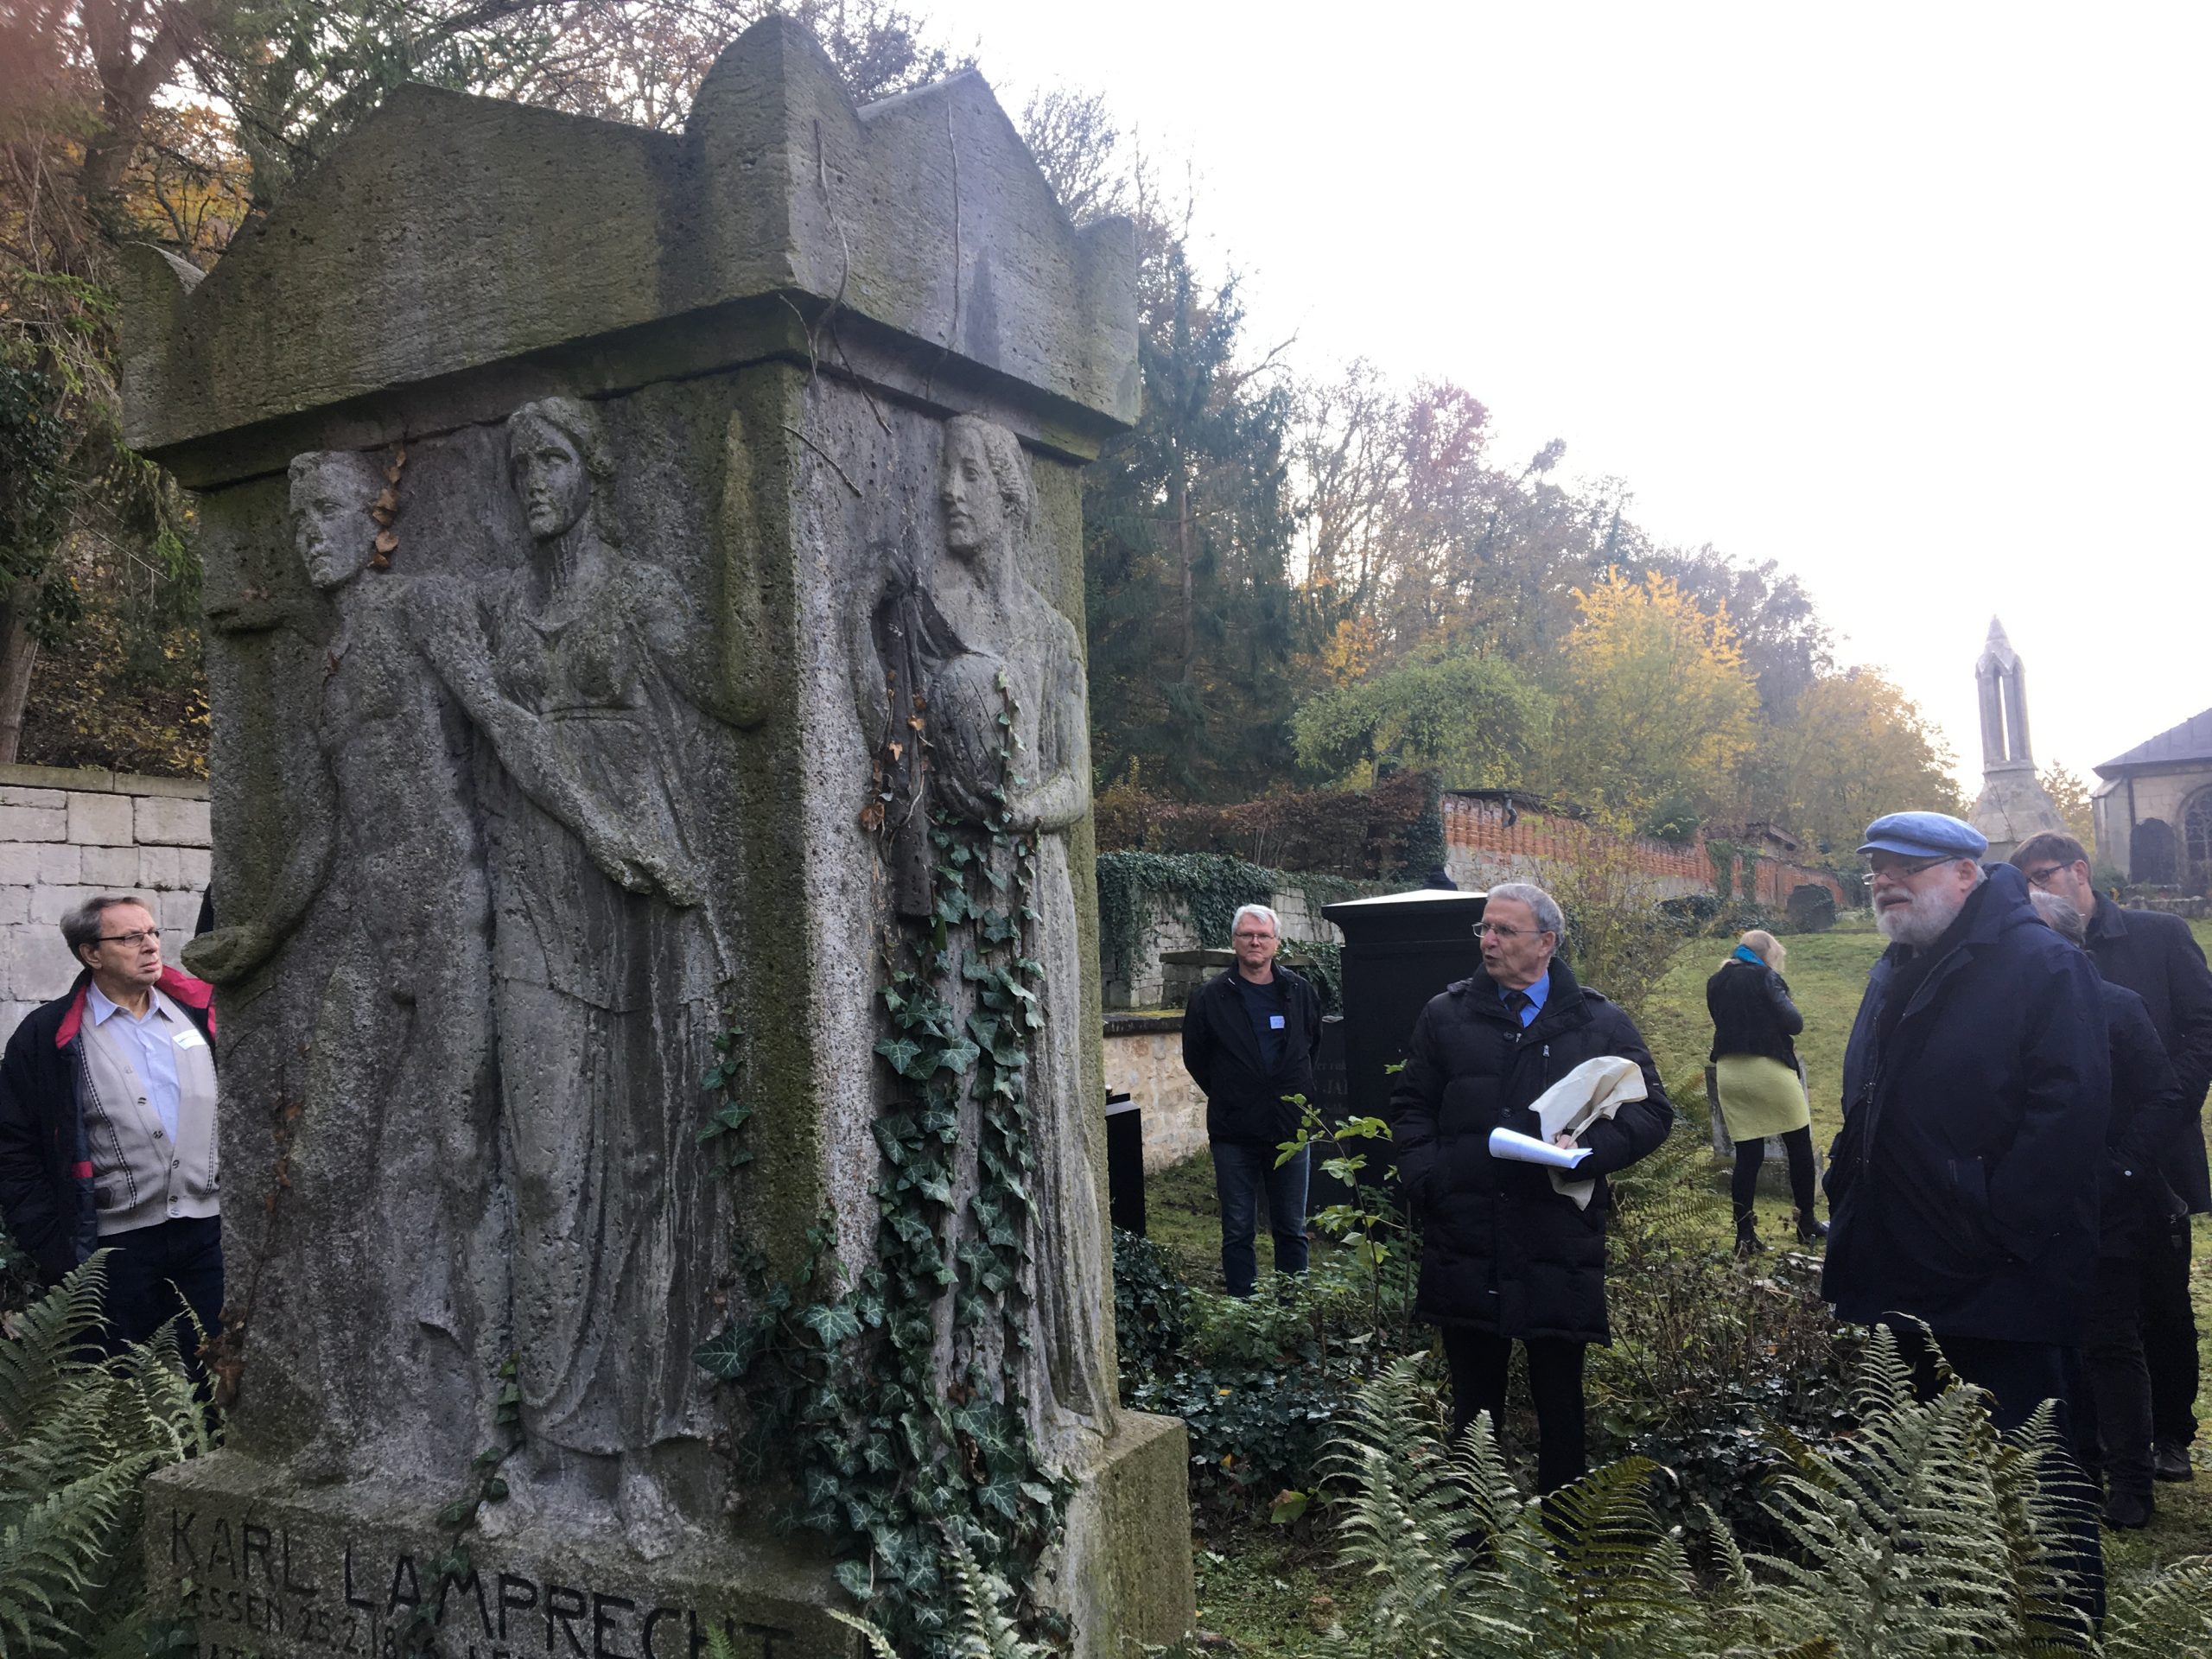 Besuch des Grabmals von Karl Lamprecht auf dem Friedhof in Schulpforte (Foto: J. Palatini)